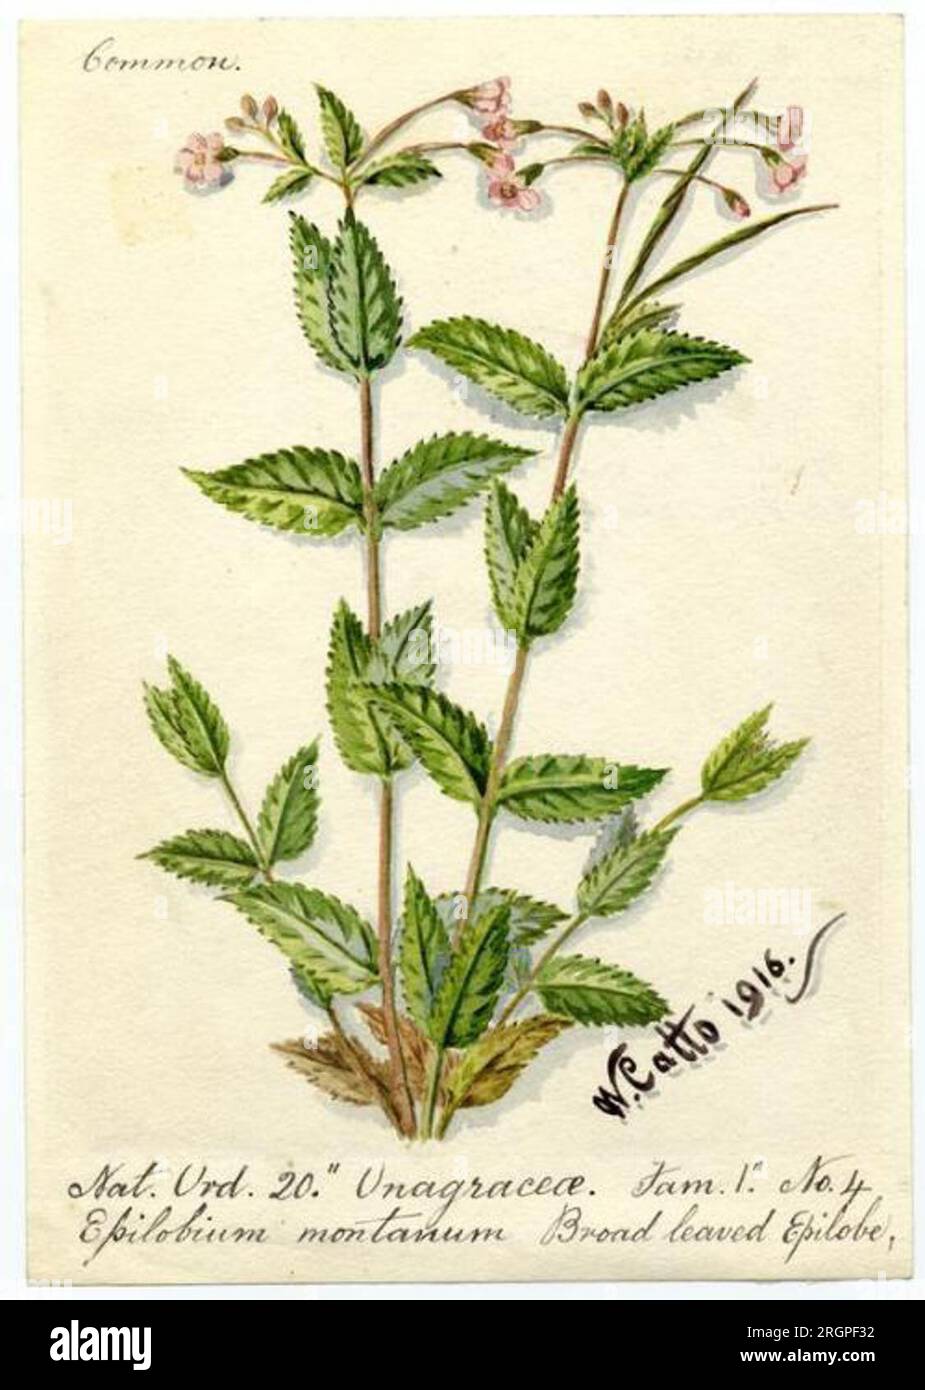 Broad leaved Epilobe (Epilobium montanum) - William Catto 1916 by William Catto Stock Photo